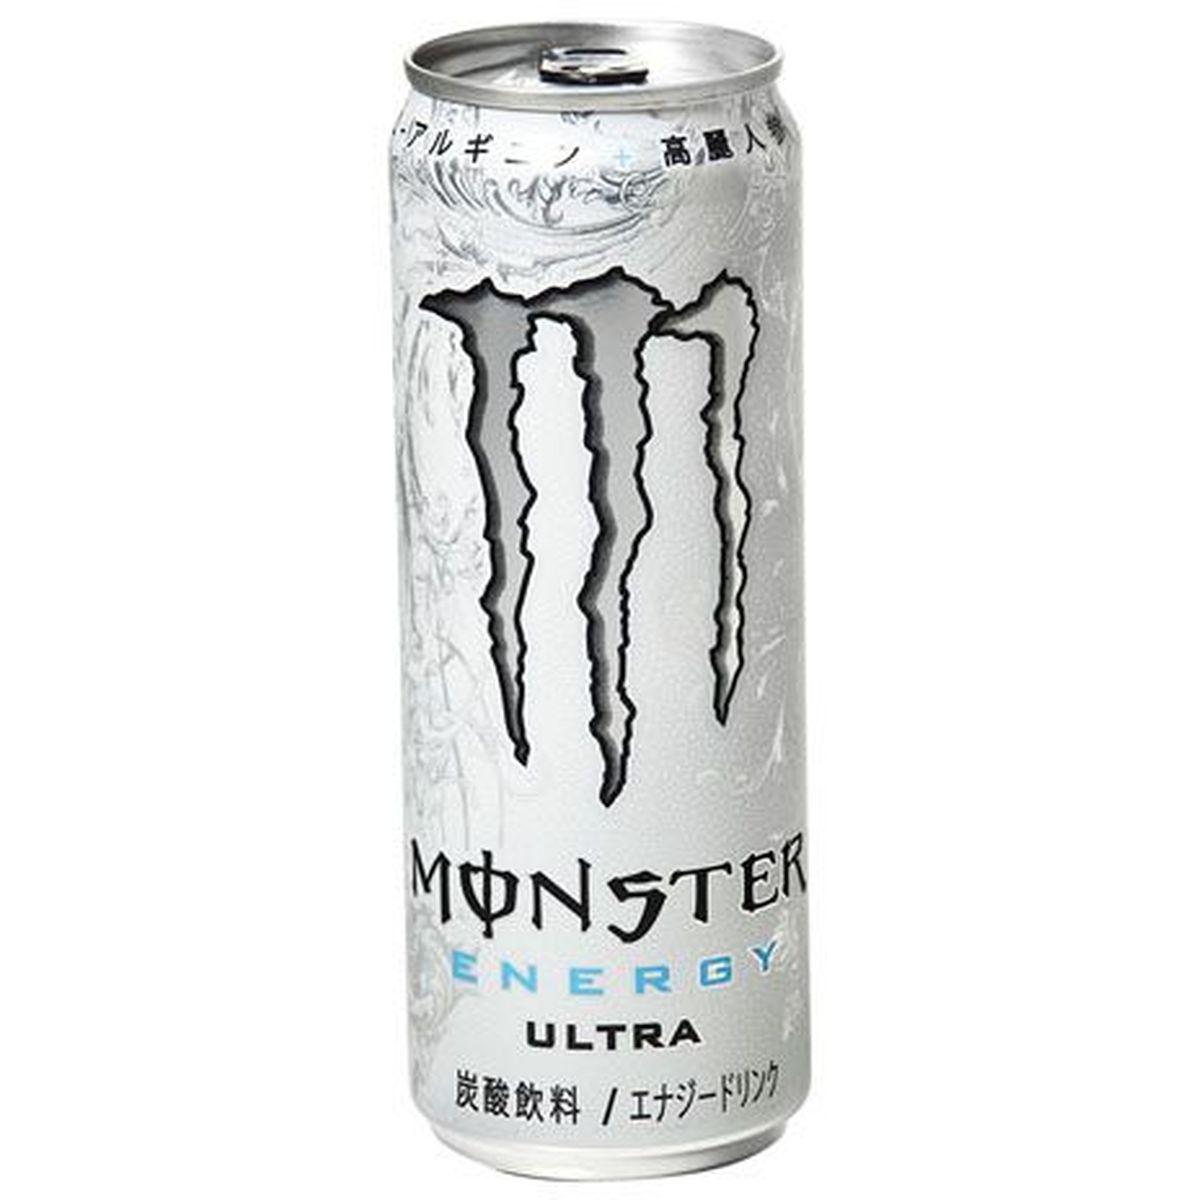 【24個入リ】アサヒ モンスター ウルトラ 缶 355ml